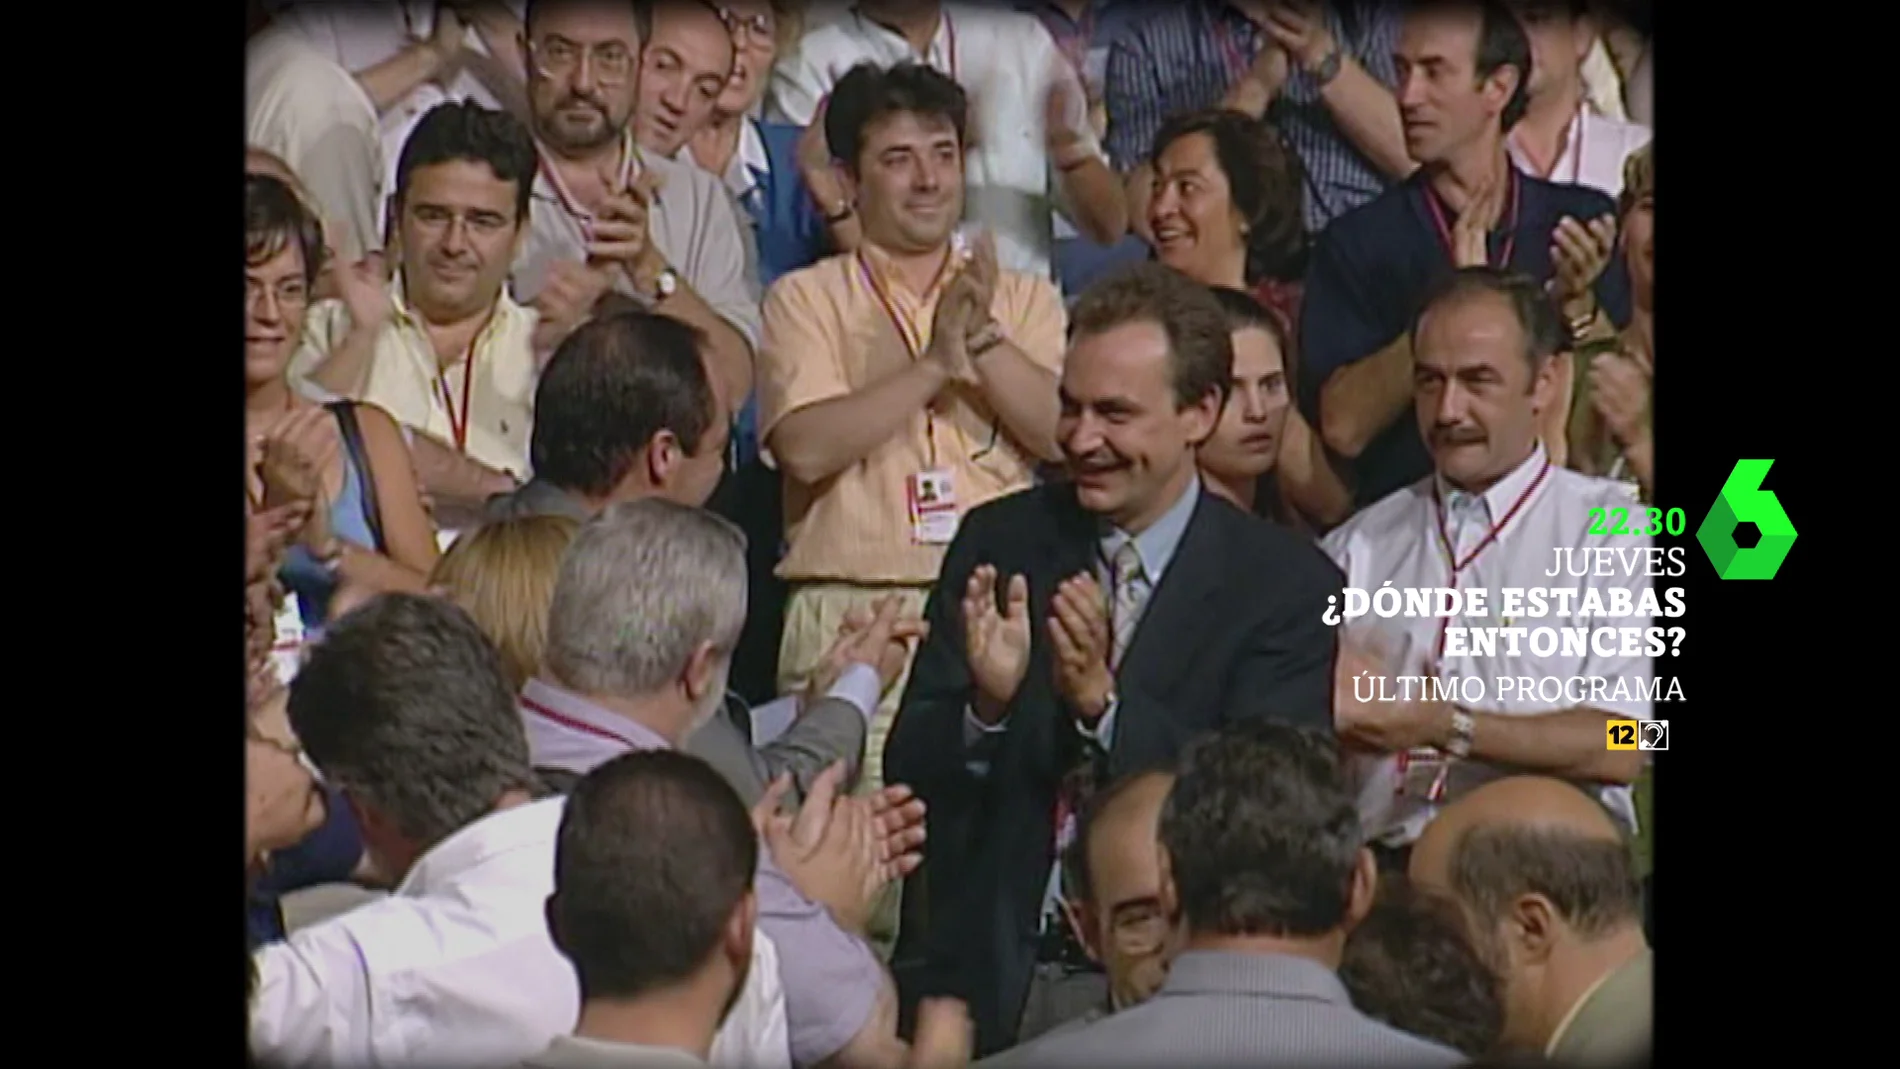 La aparición de José Luis Rodríguez Zapatero en Dónde estabas entonces